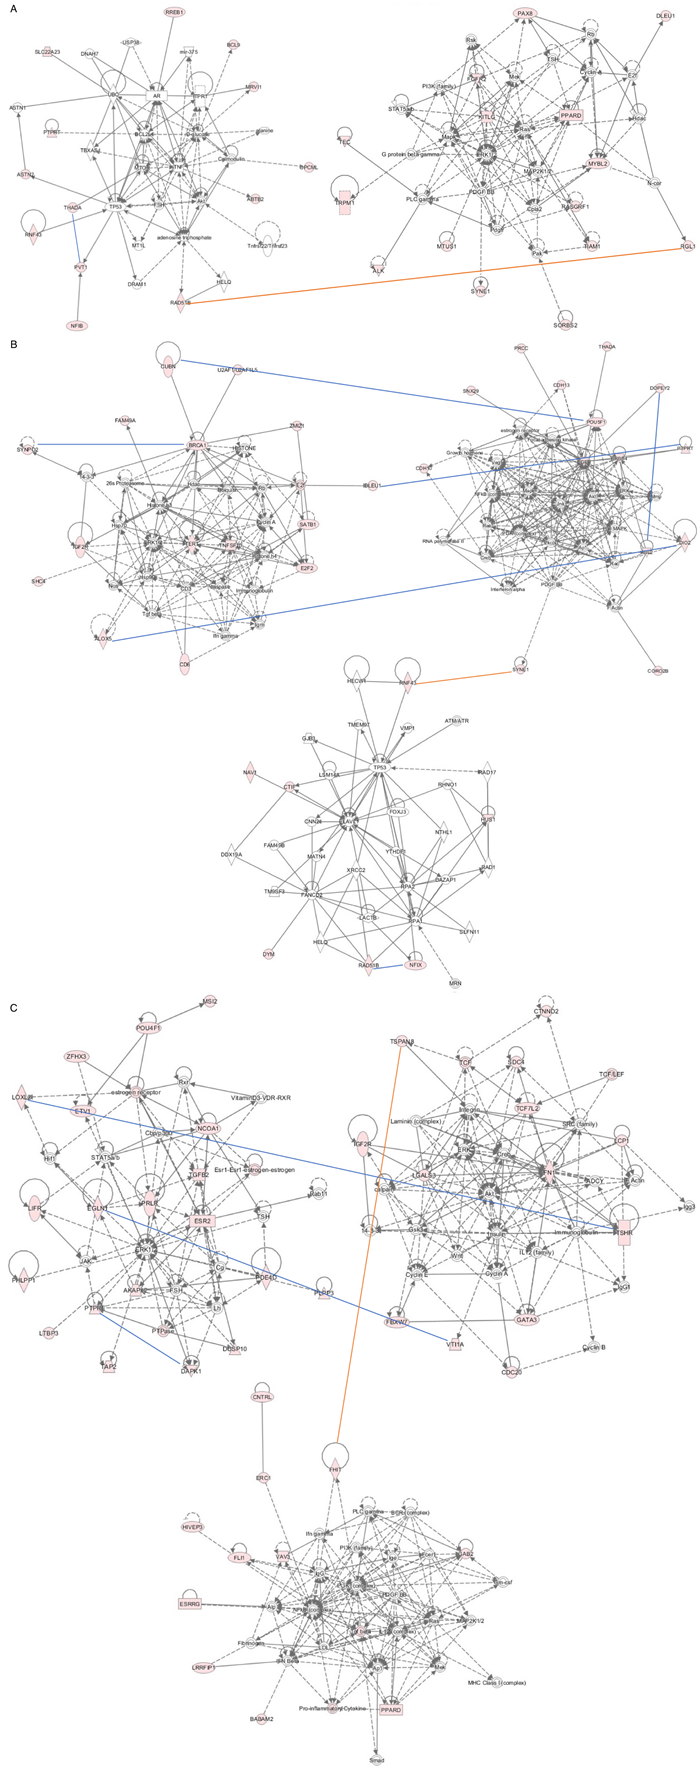 Gene network analysis using IPA program.